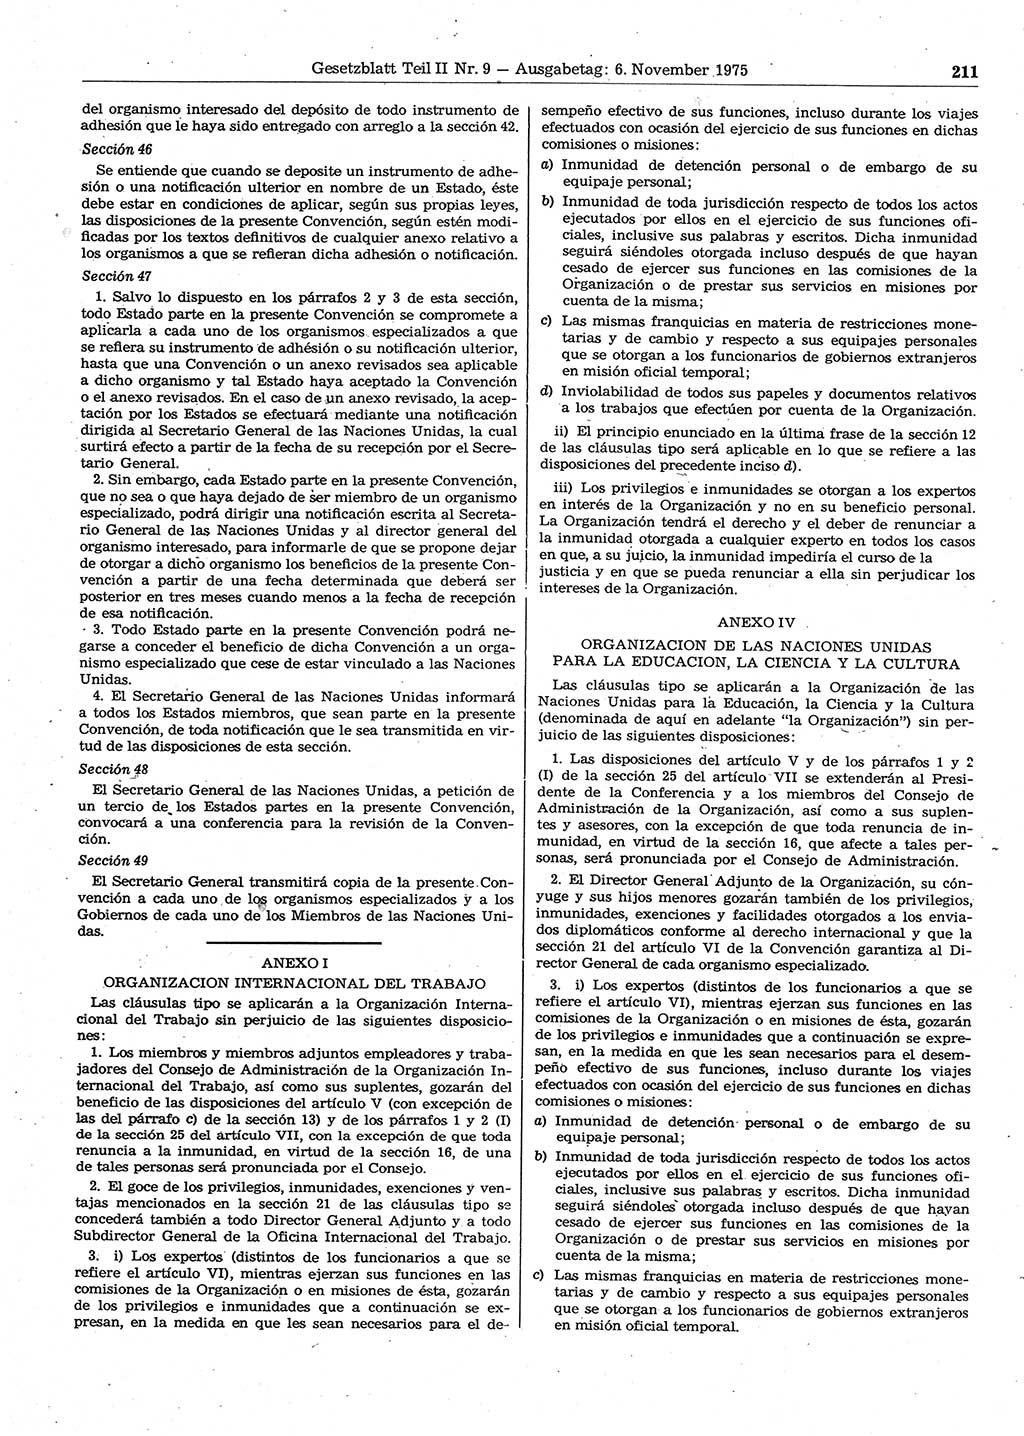 Gesetzblatt (GBl.) der Deutschen Demokratischen Republik (DDR) Teil ⅠⅠ 1975, Seite 211 (GBl. DDR ⅠⅠ 1975, S. 211)